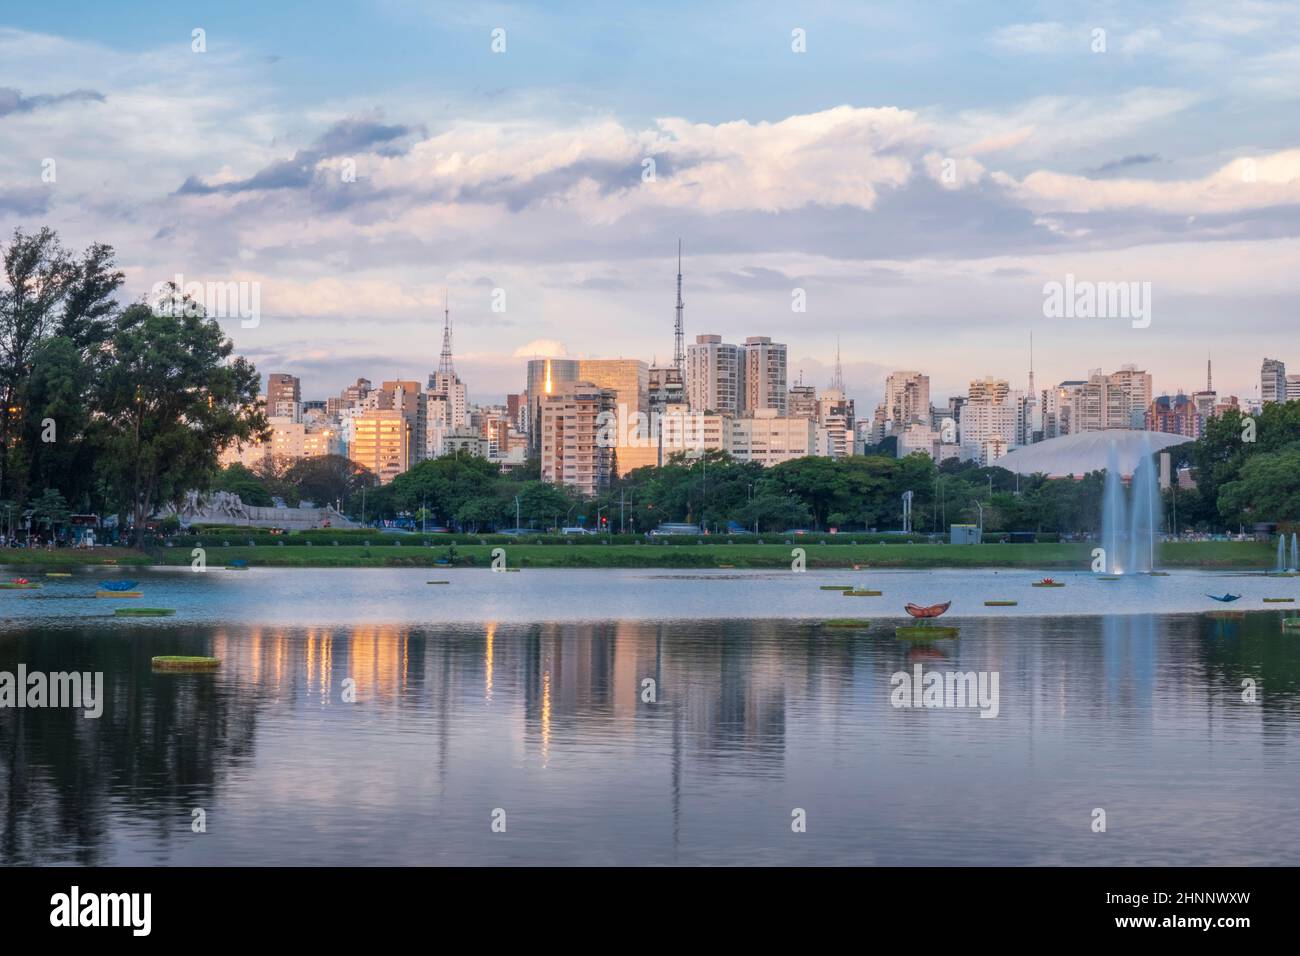 Brasile, Sao Paulo, Città di Sao Paulo, vista del lago e fontane nel Parco Ibirapuera nel tardo pomeriggio, skyline della città, giorno d'estate Foto Stock